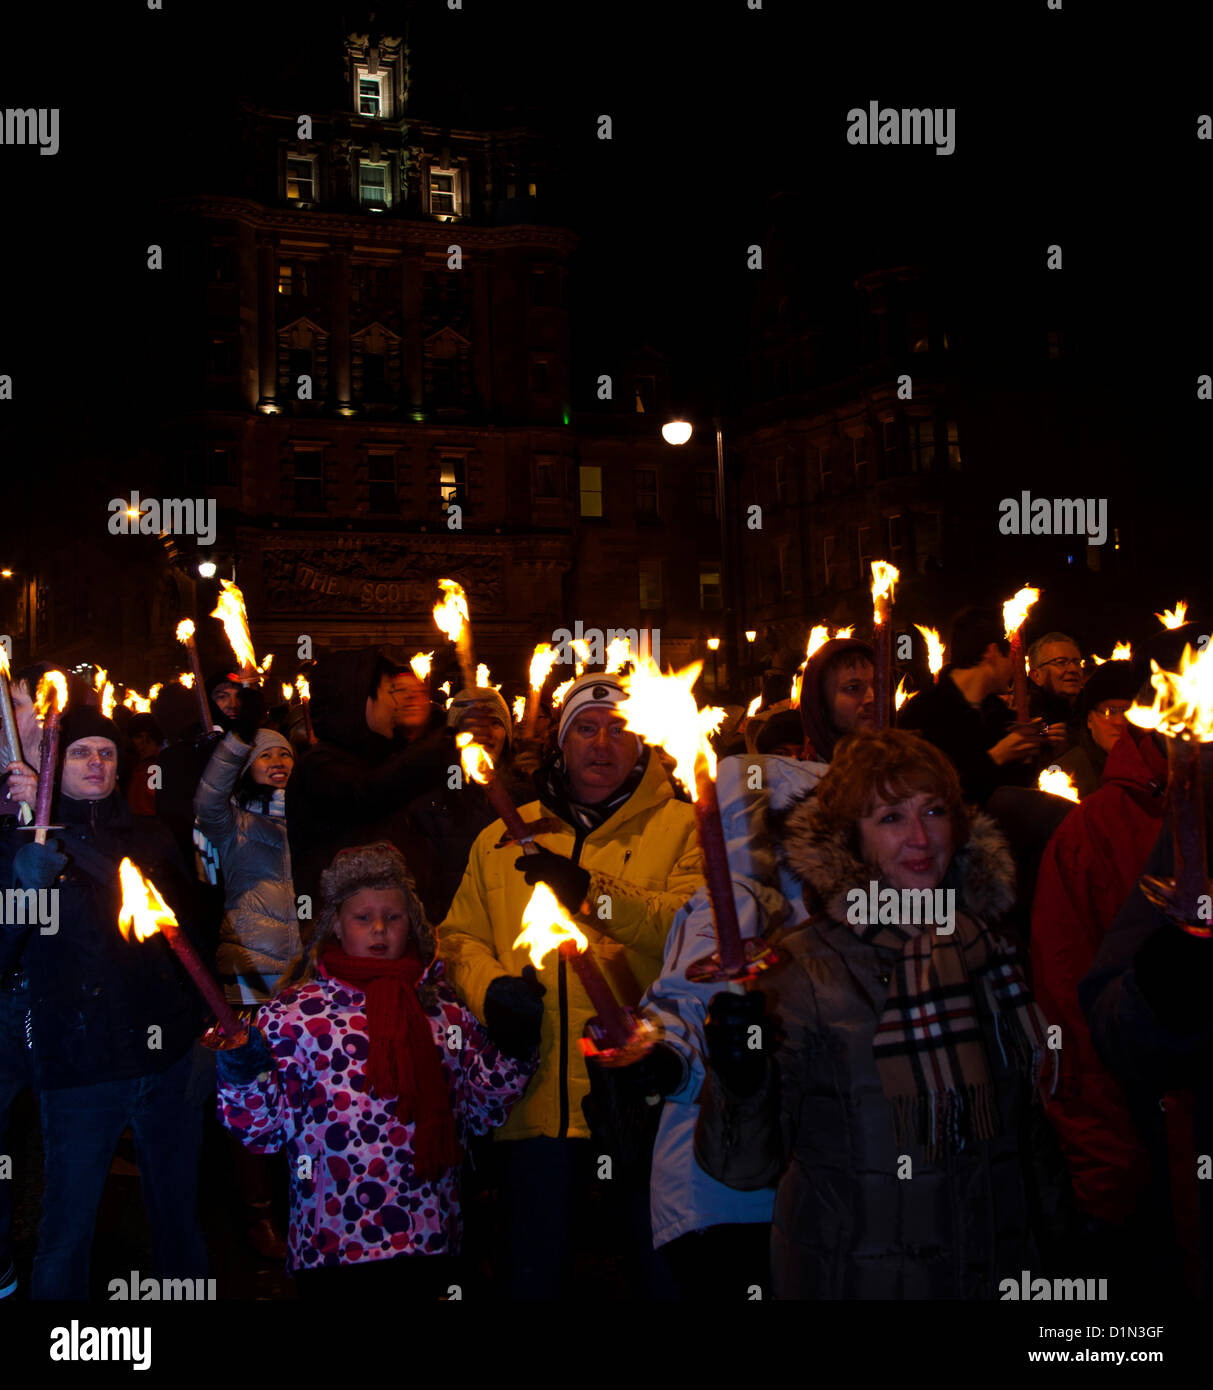 Edimburgo, Reino Unido. El 30 de diciembre de 2012. Desfile de antorchas en Edimburgo para indicar el inicio de la capital escocesa de 2012 concluir las celebraciones de Año Nuevo con fuegos artificiales sobre Calton Hill Foto de stock